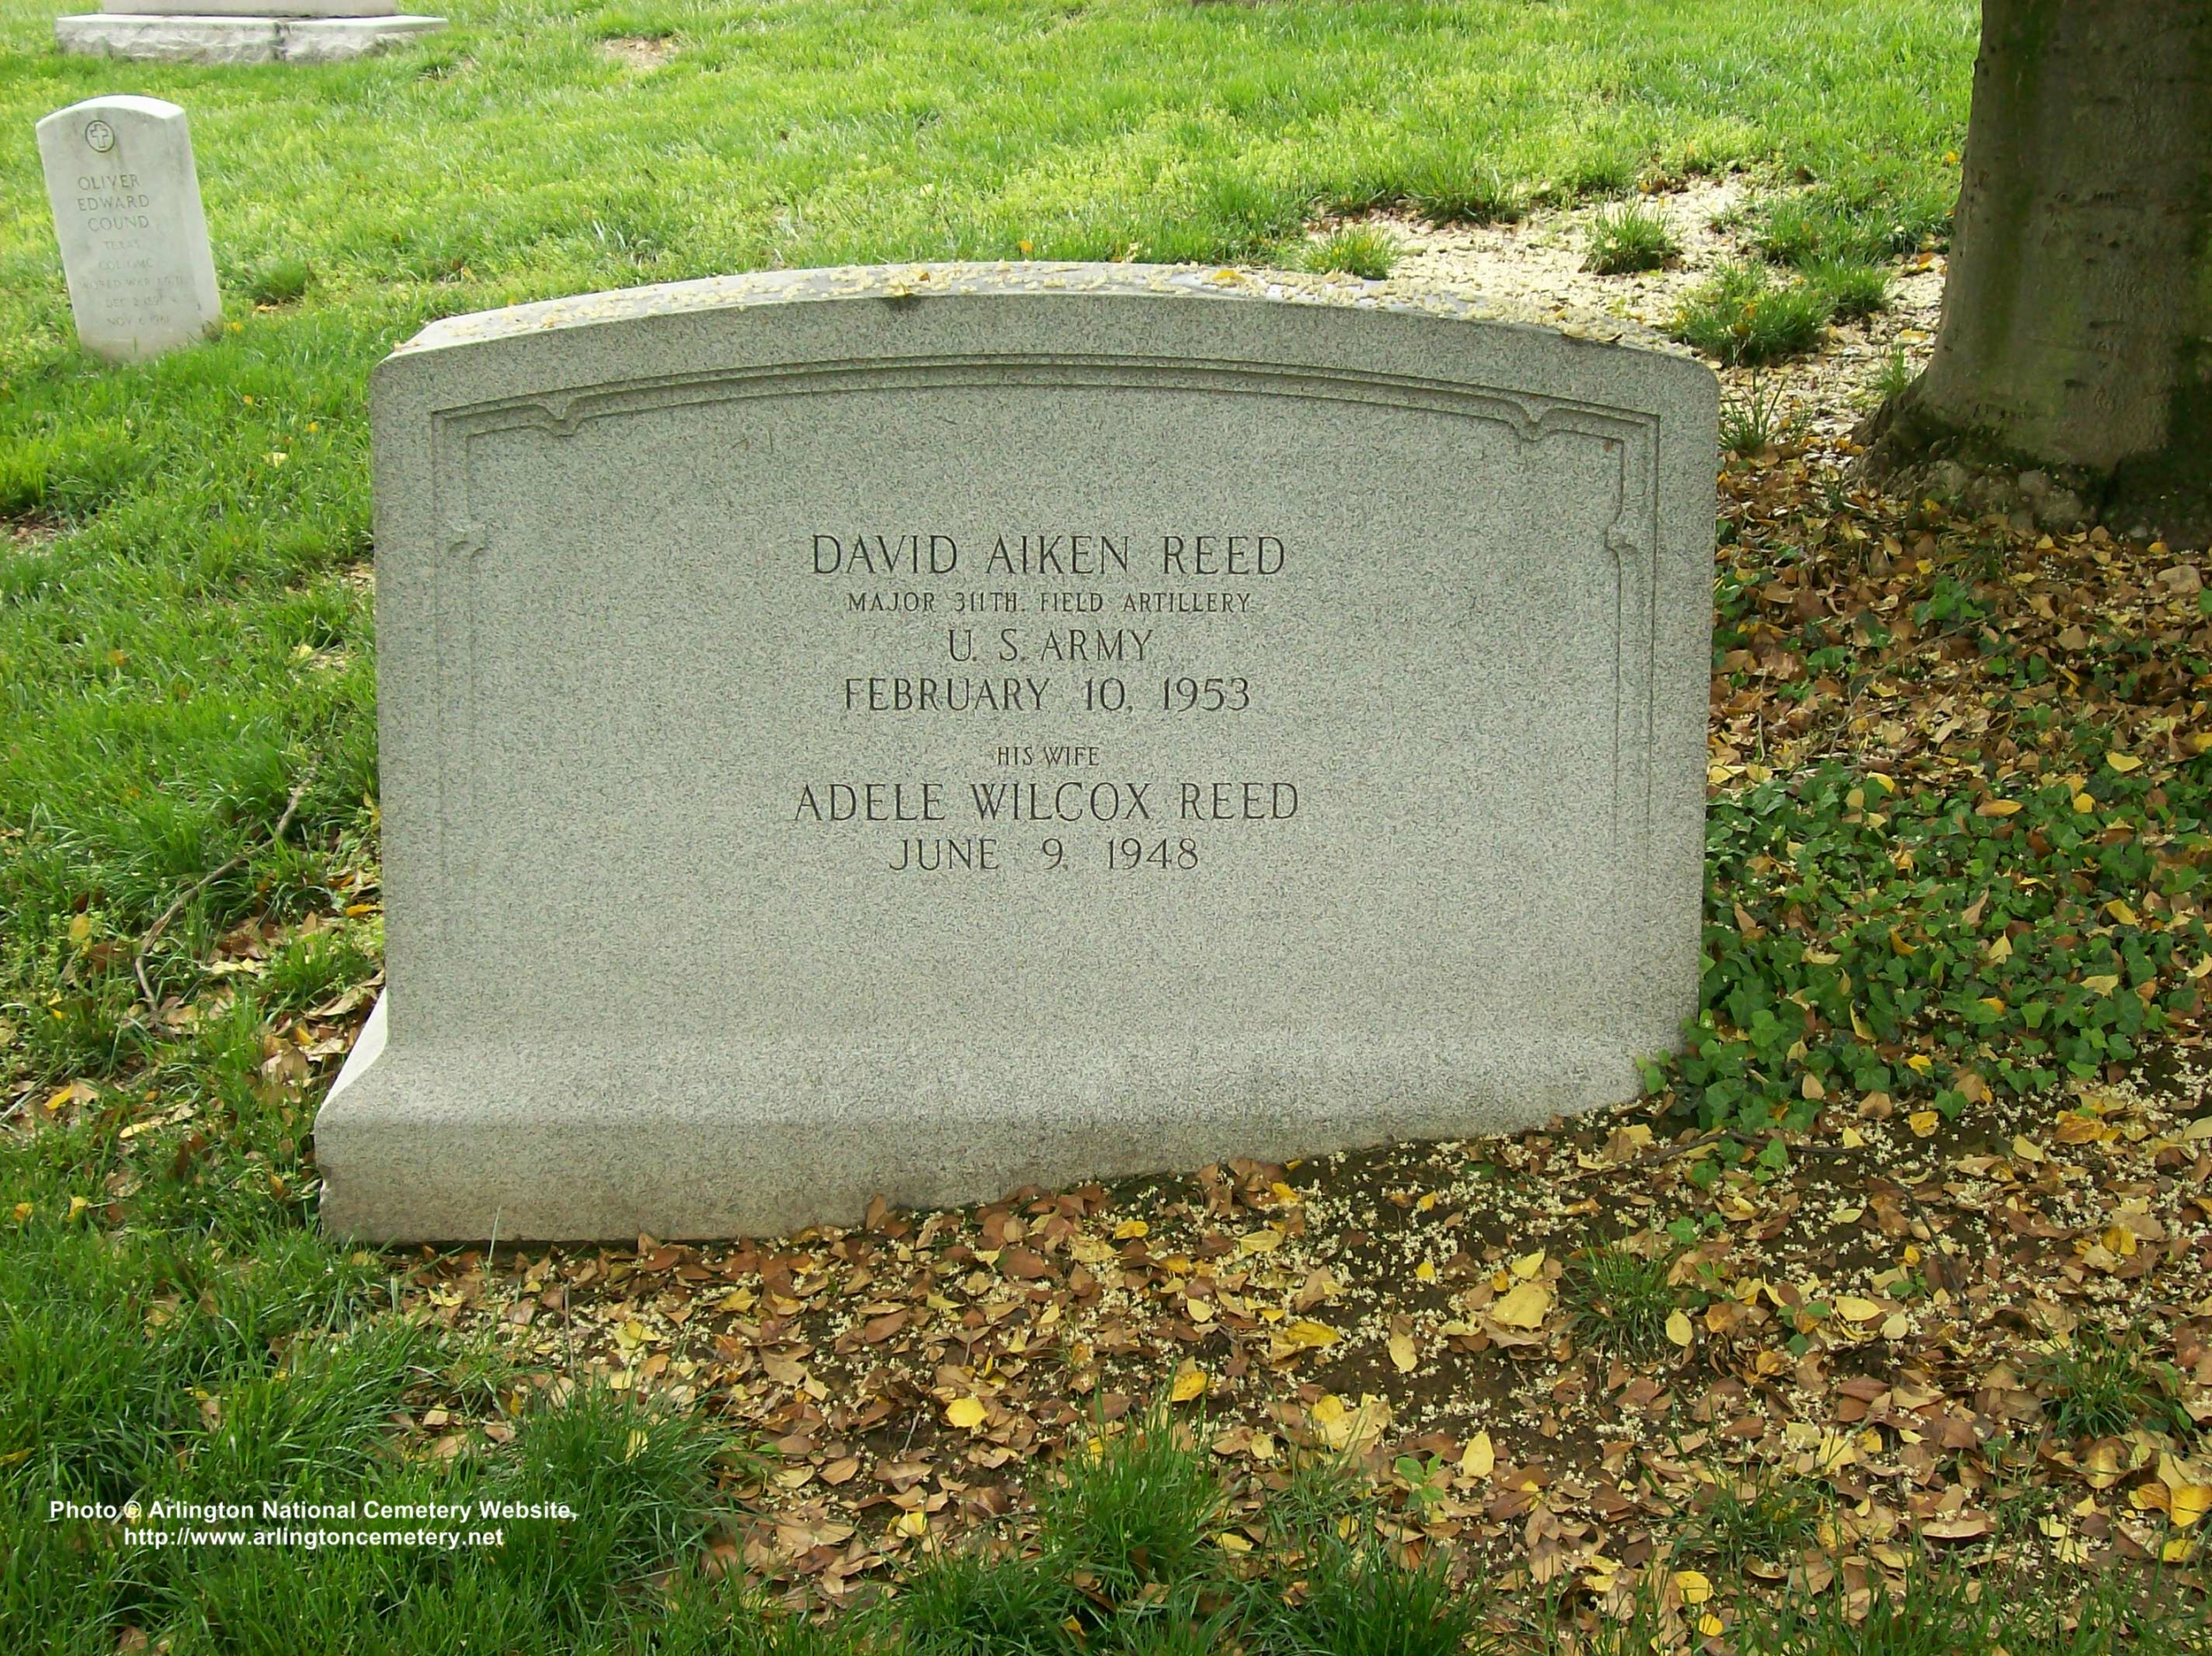 dareed-gravesite-photo-may-2008-001